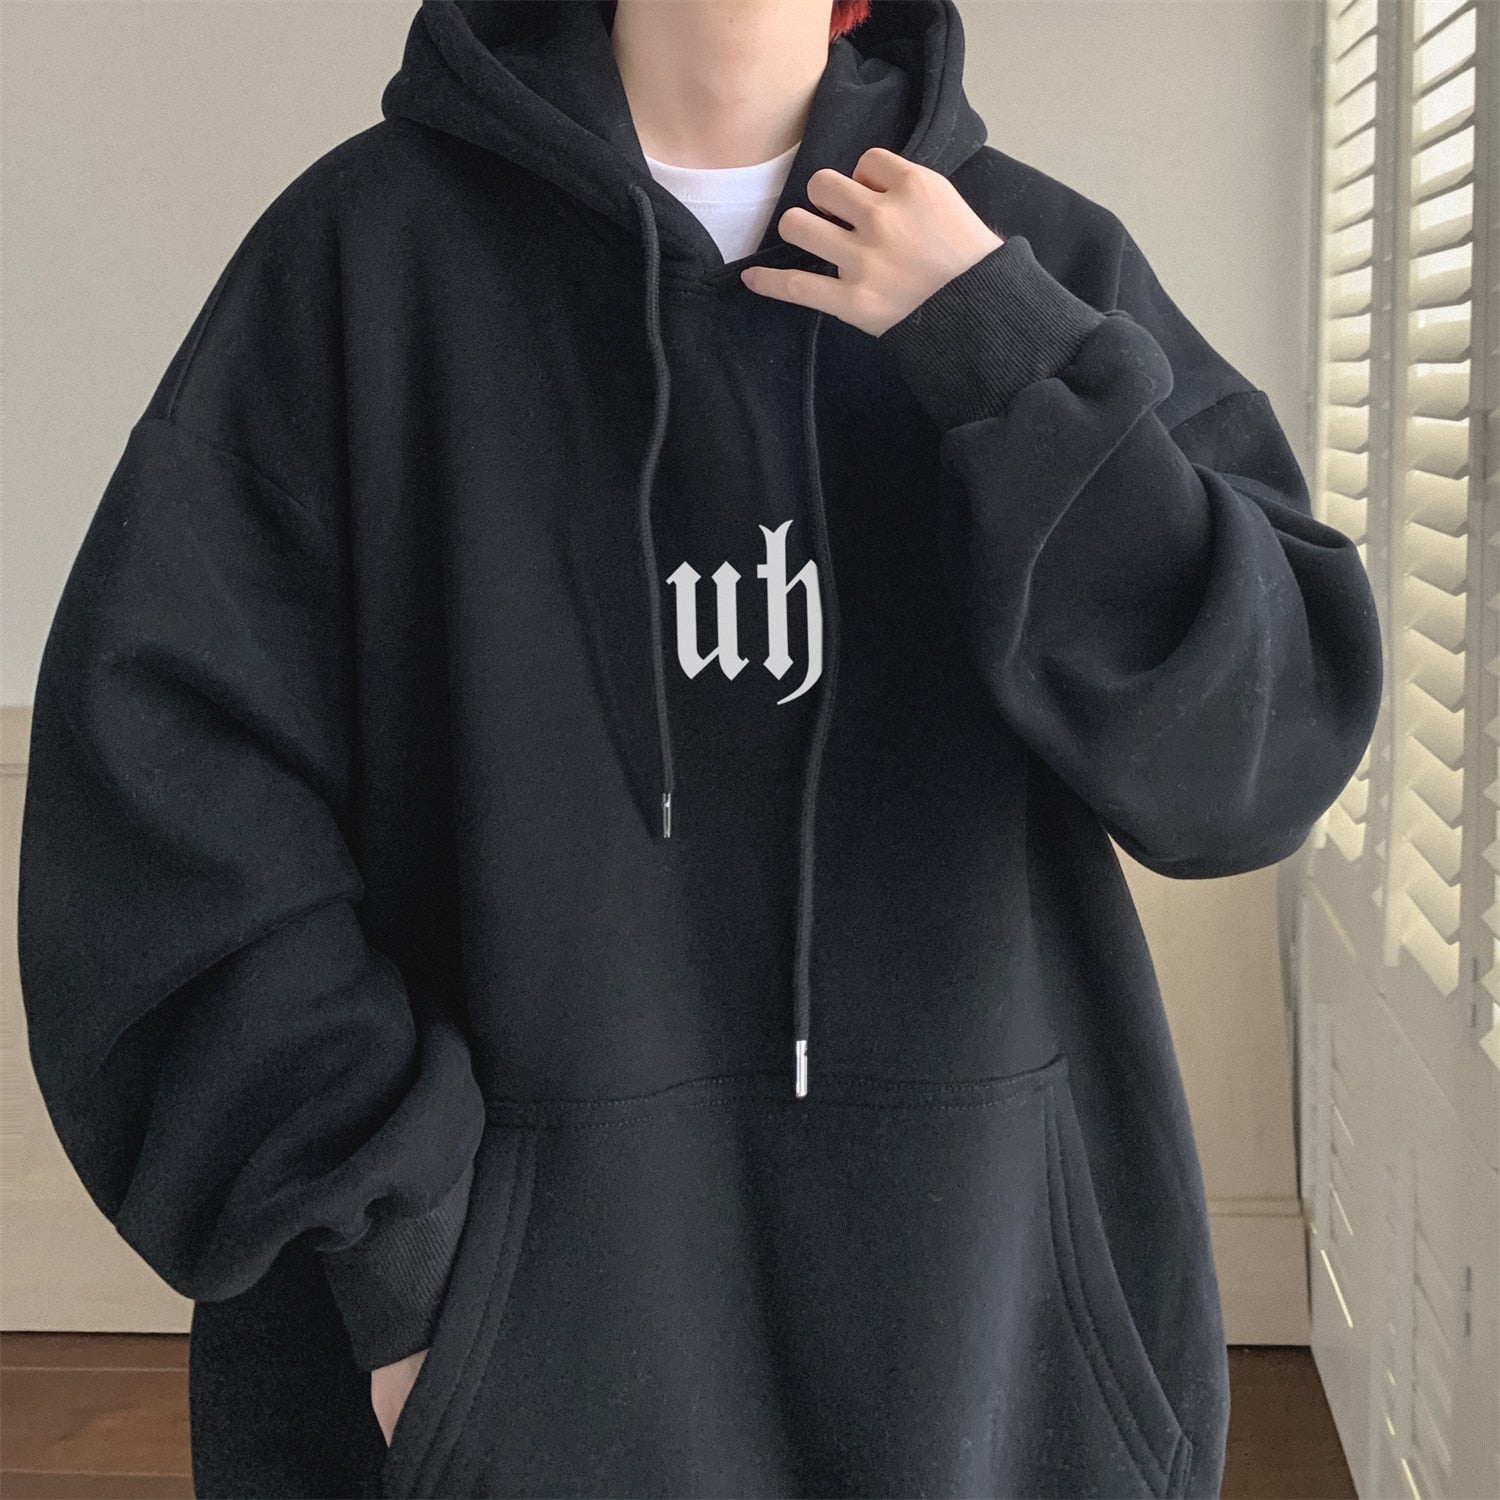 Black / M hoodies "UH" fashion 14:173#Black;5:361386